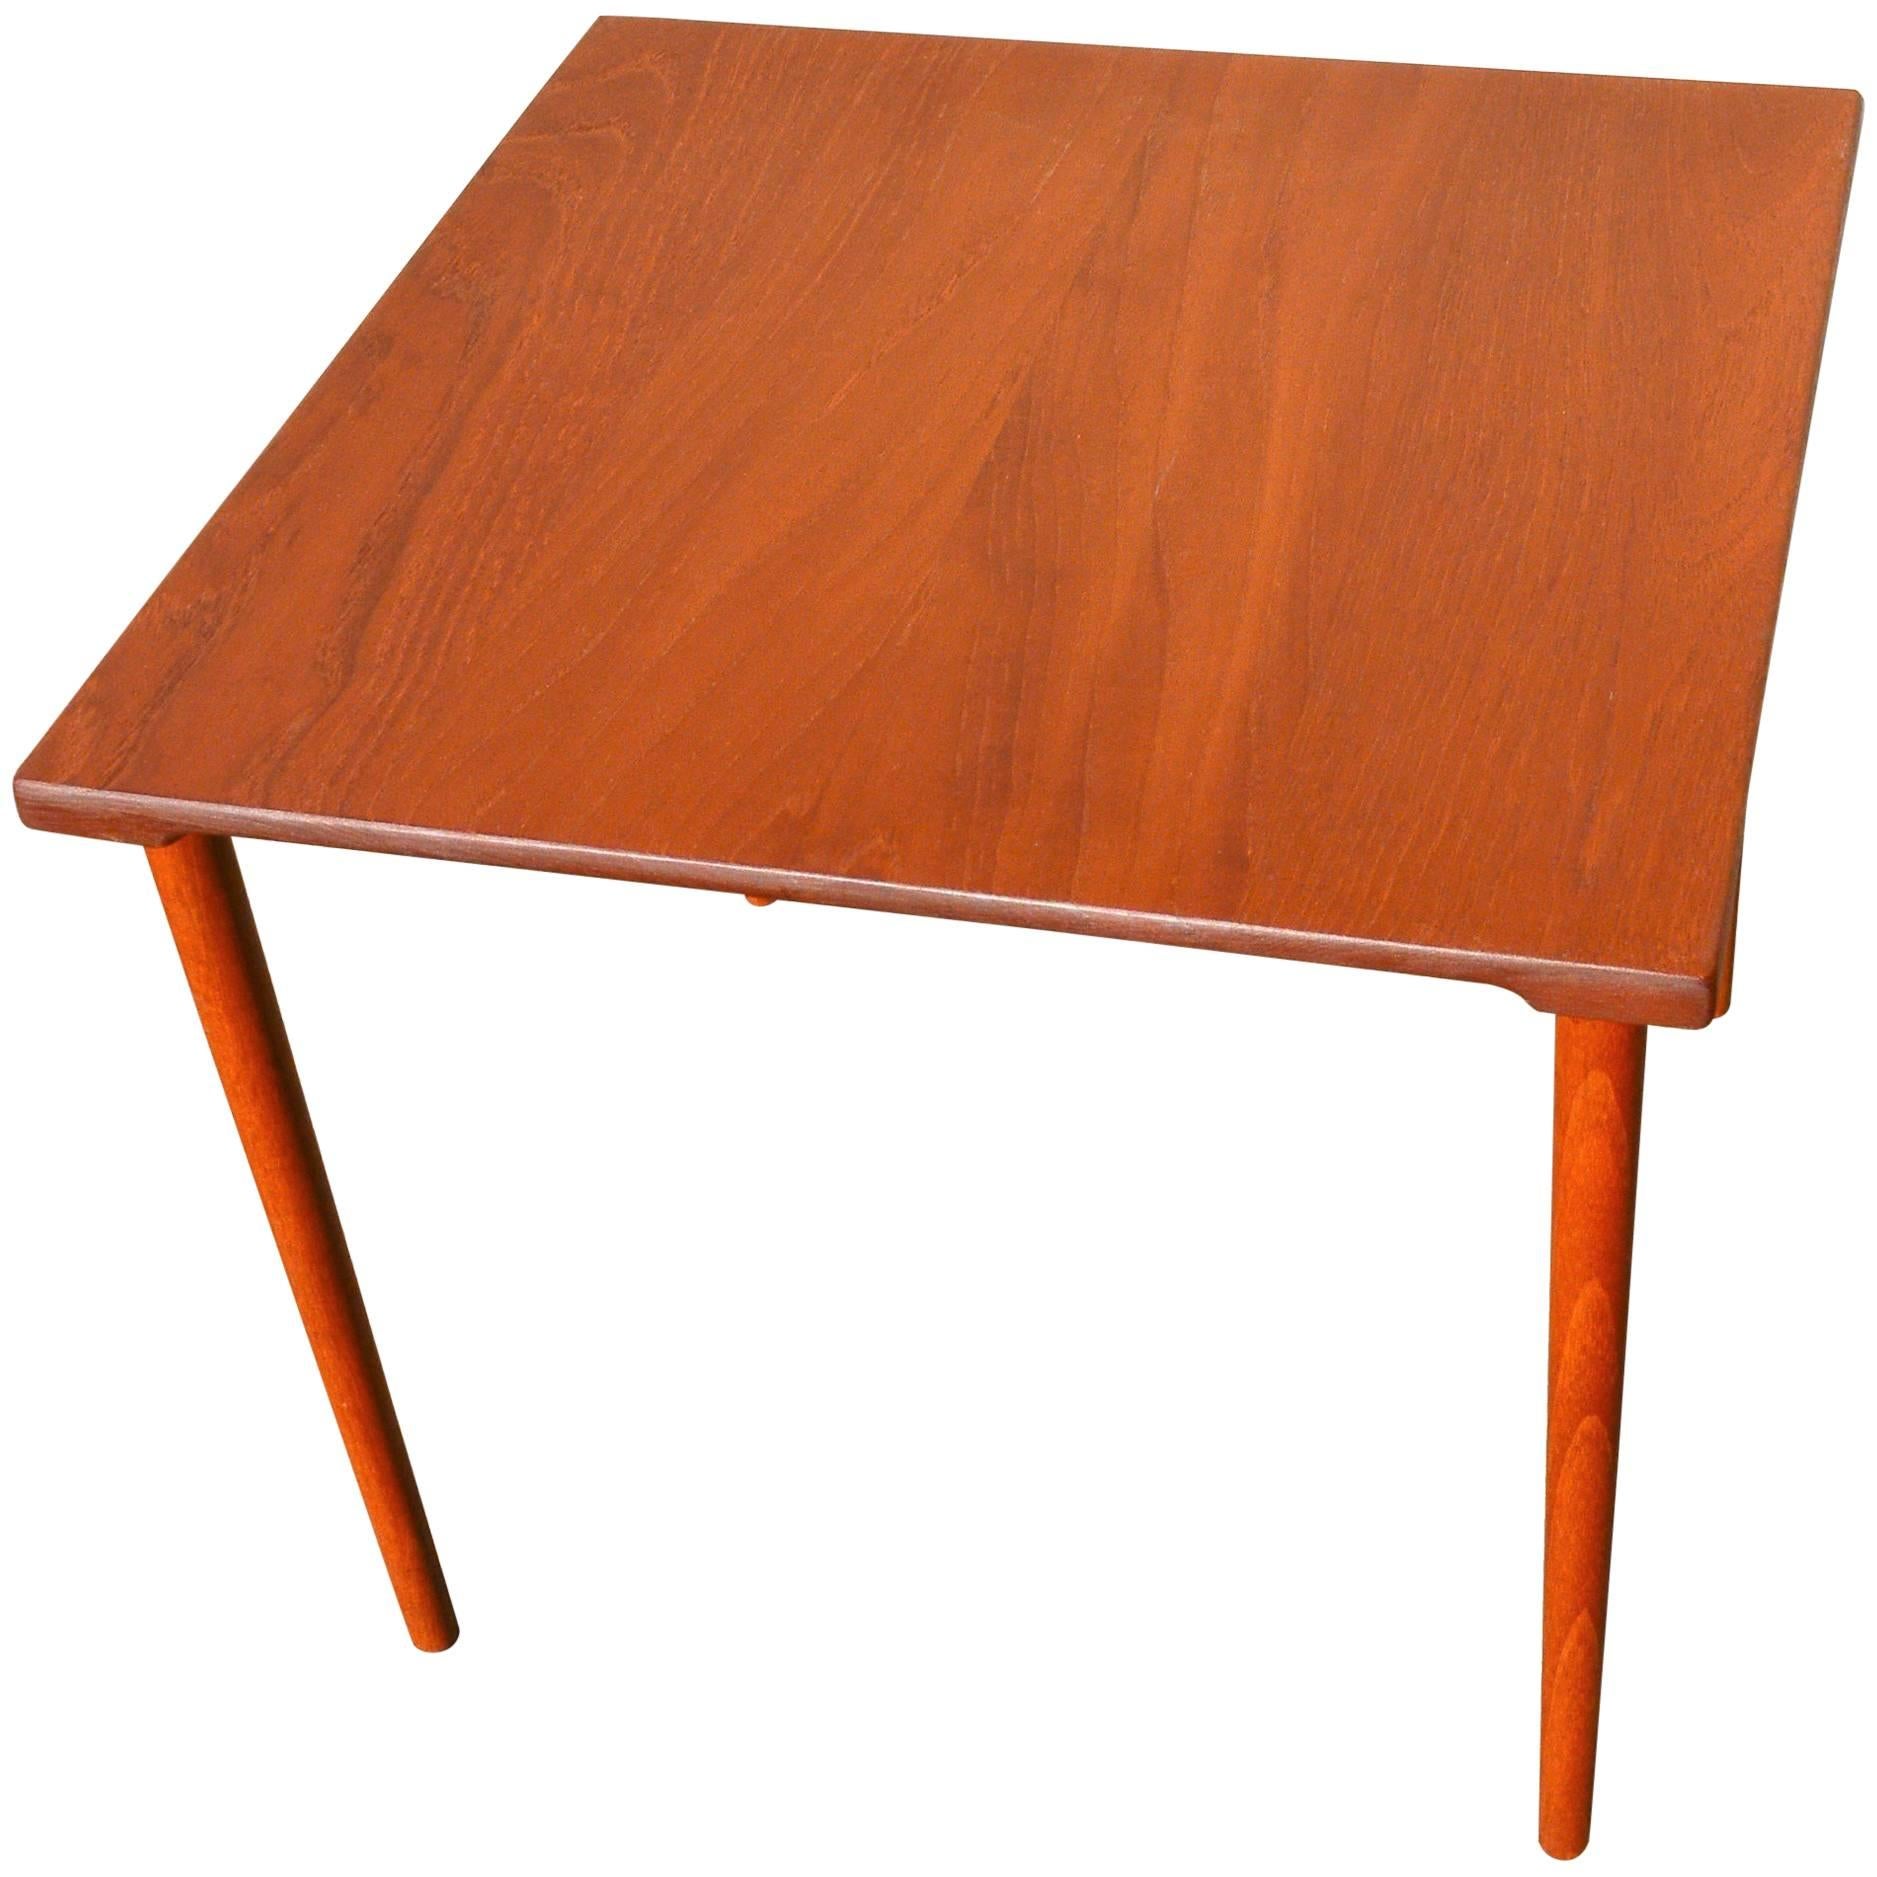 Two Danish Modern Solid Teak 1960s Square Side Table by Hvidt & Mølgaard-Nielsen